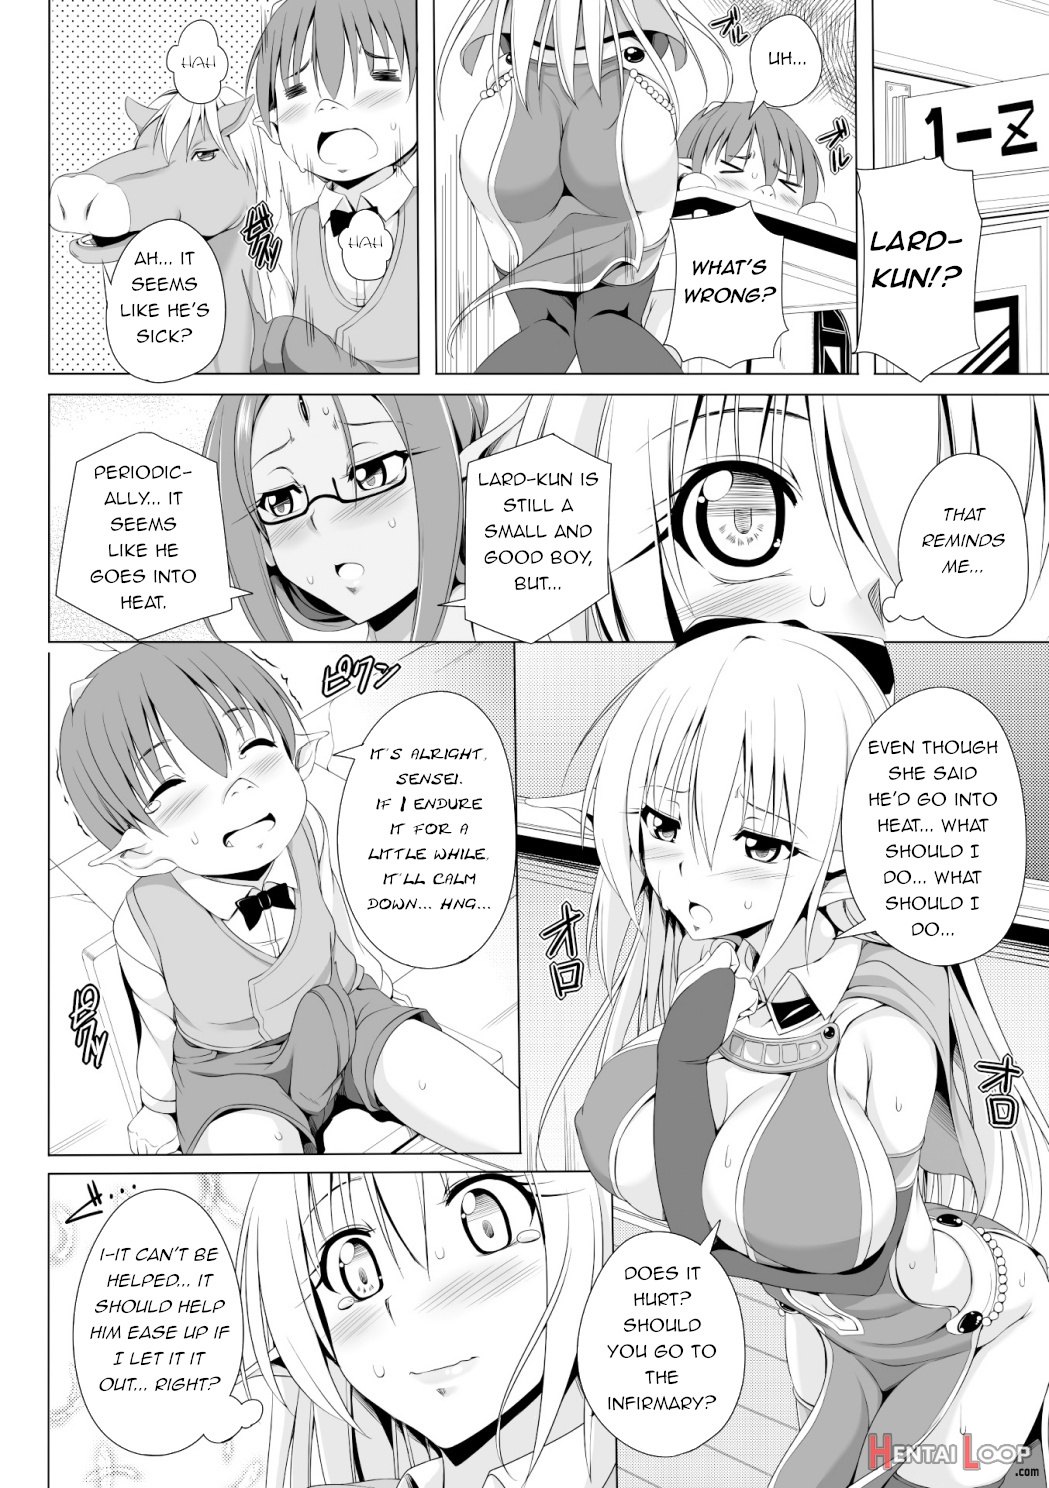 Eris Sensei's Classrom Breakdown page 4